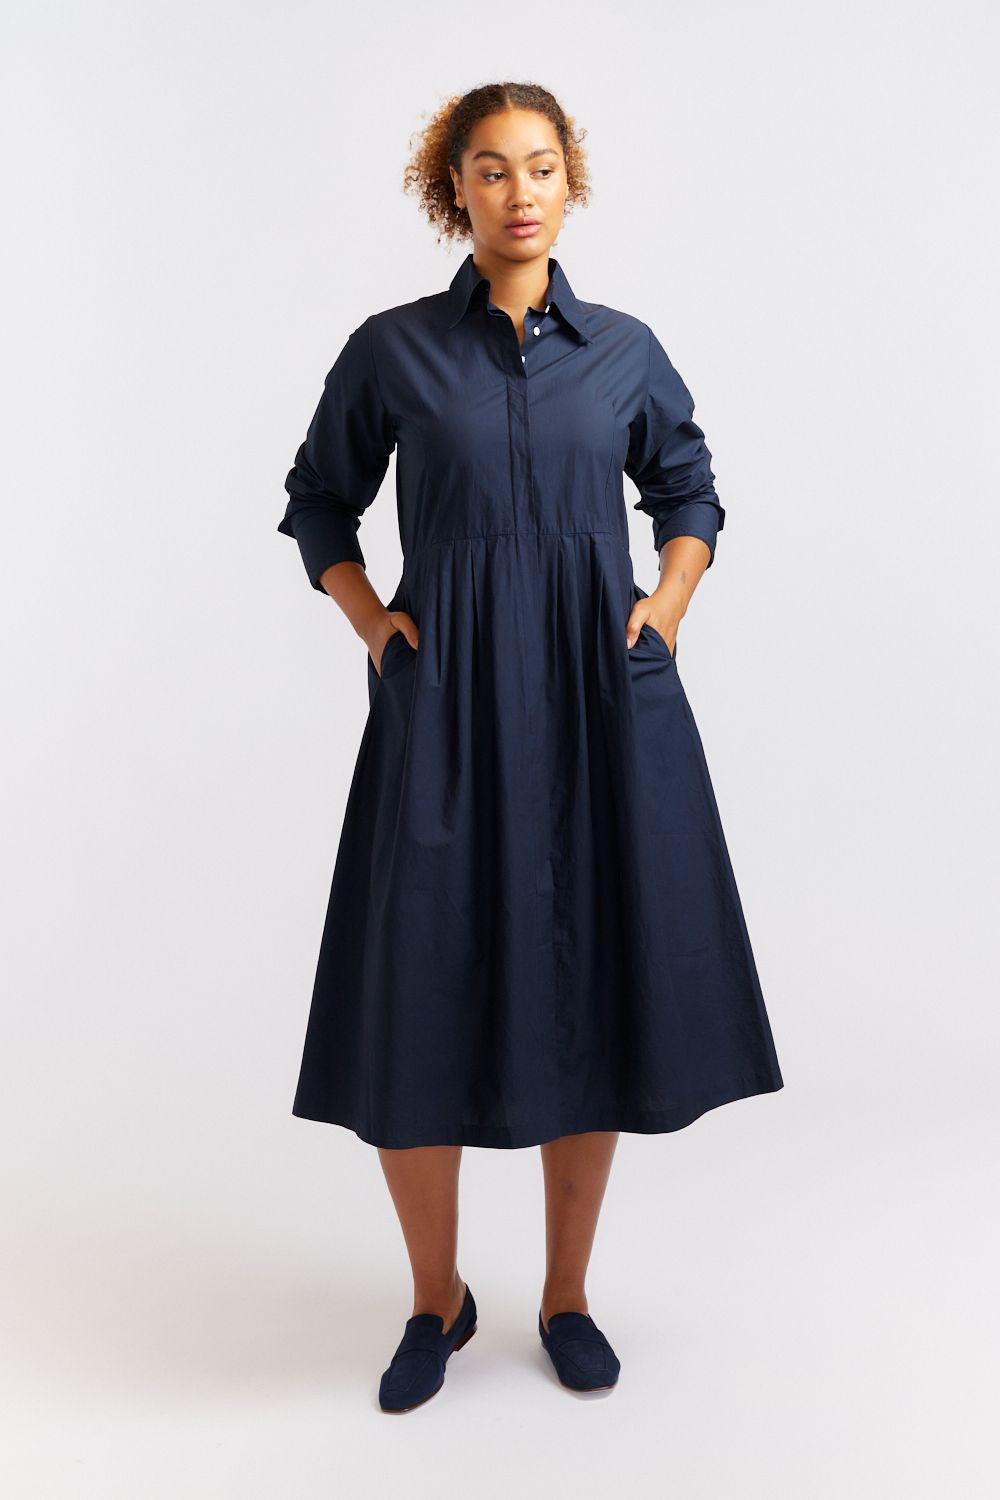 Juniper Dress - Navy Poplin Dresses Alessandra   